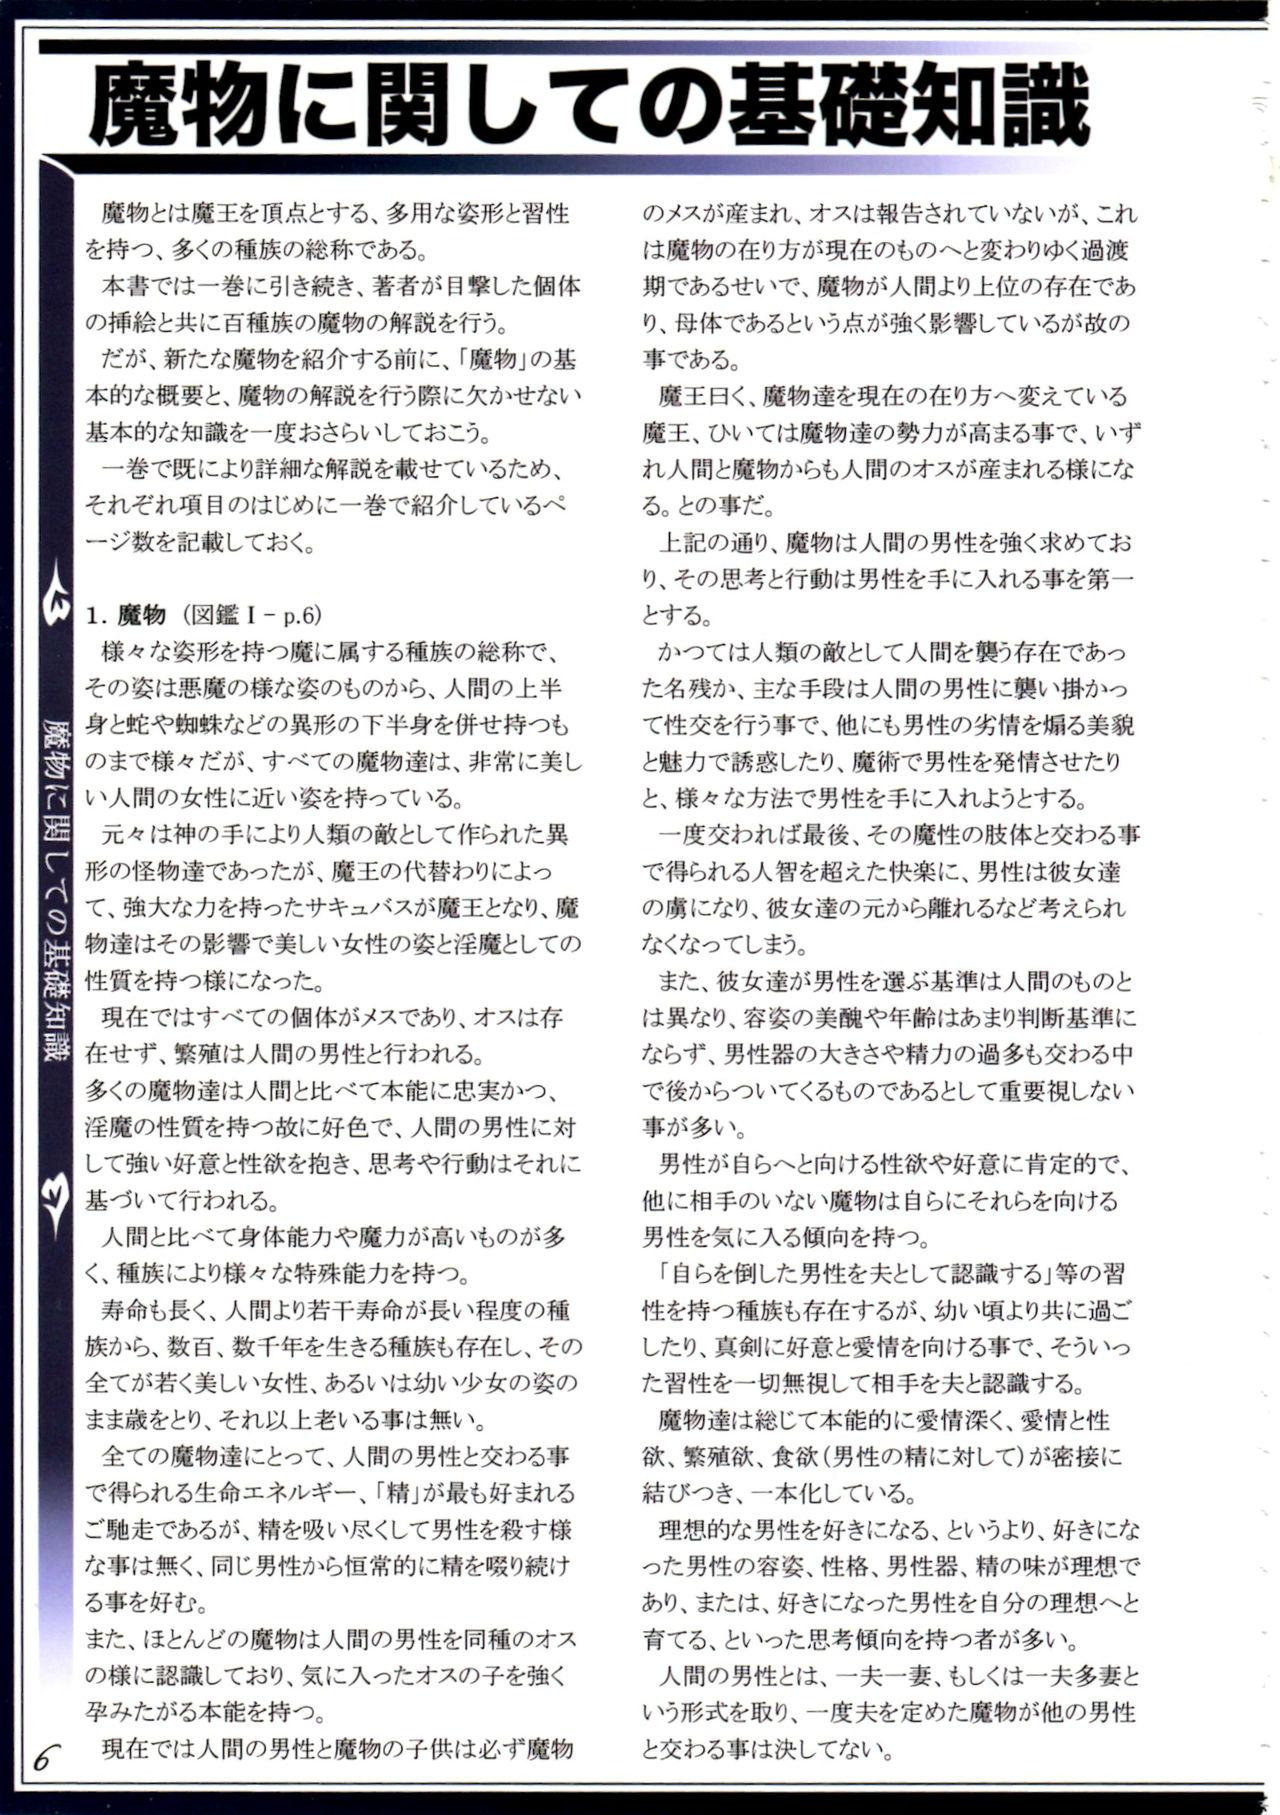 Futanari Mamono Musume Zukan II - Mamono musume zukan Mmd - Page 9